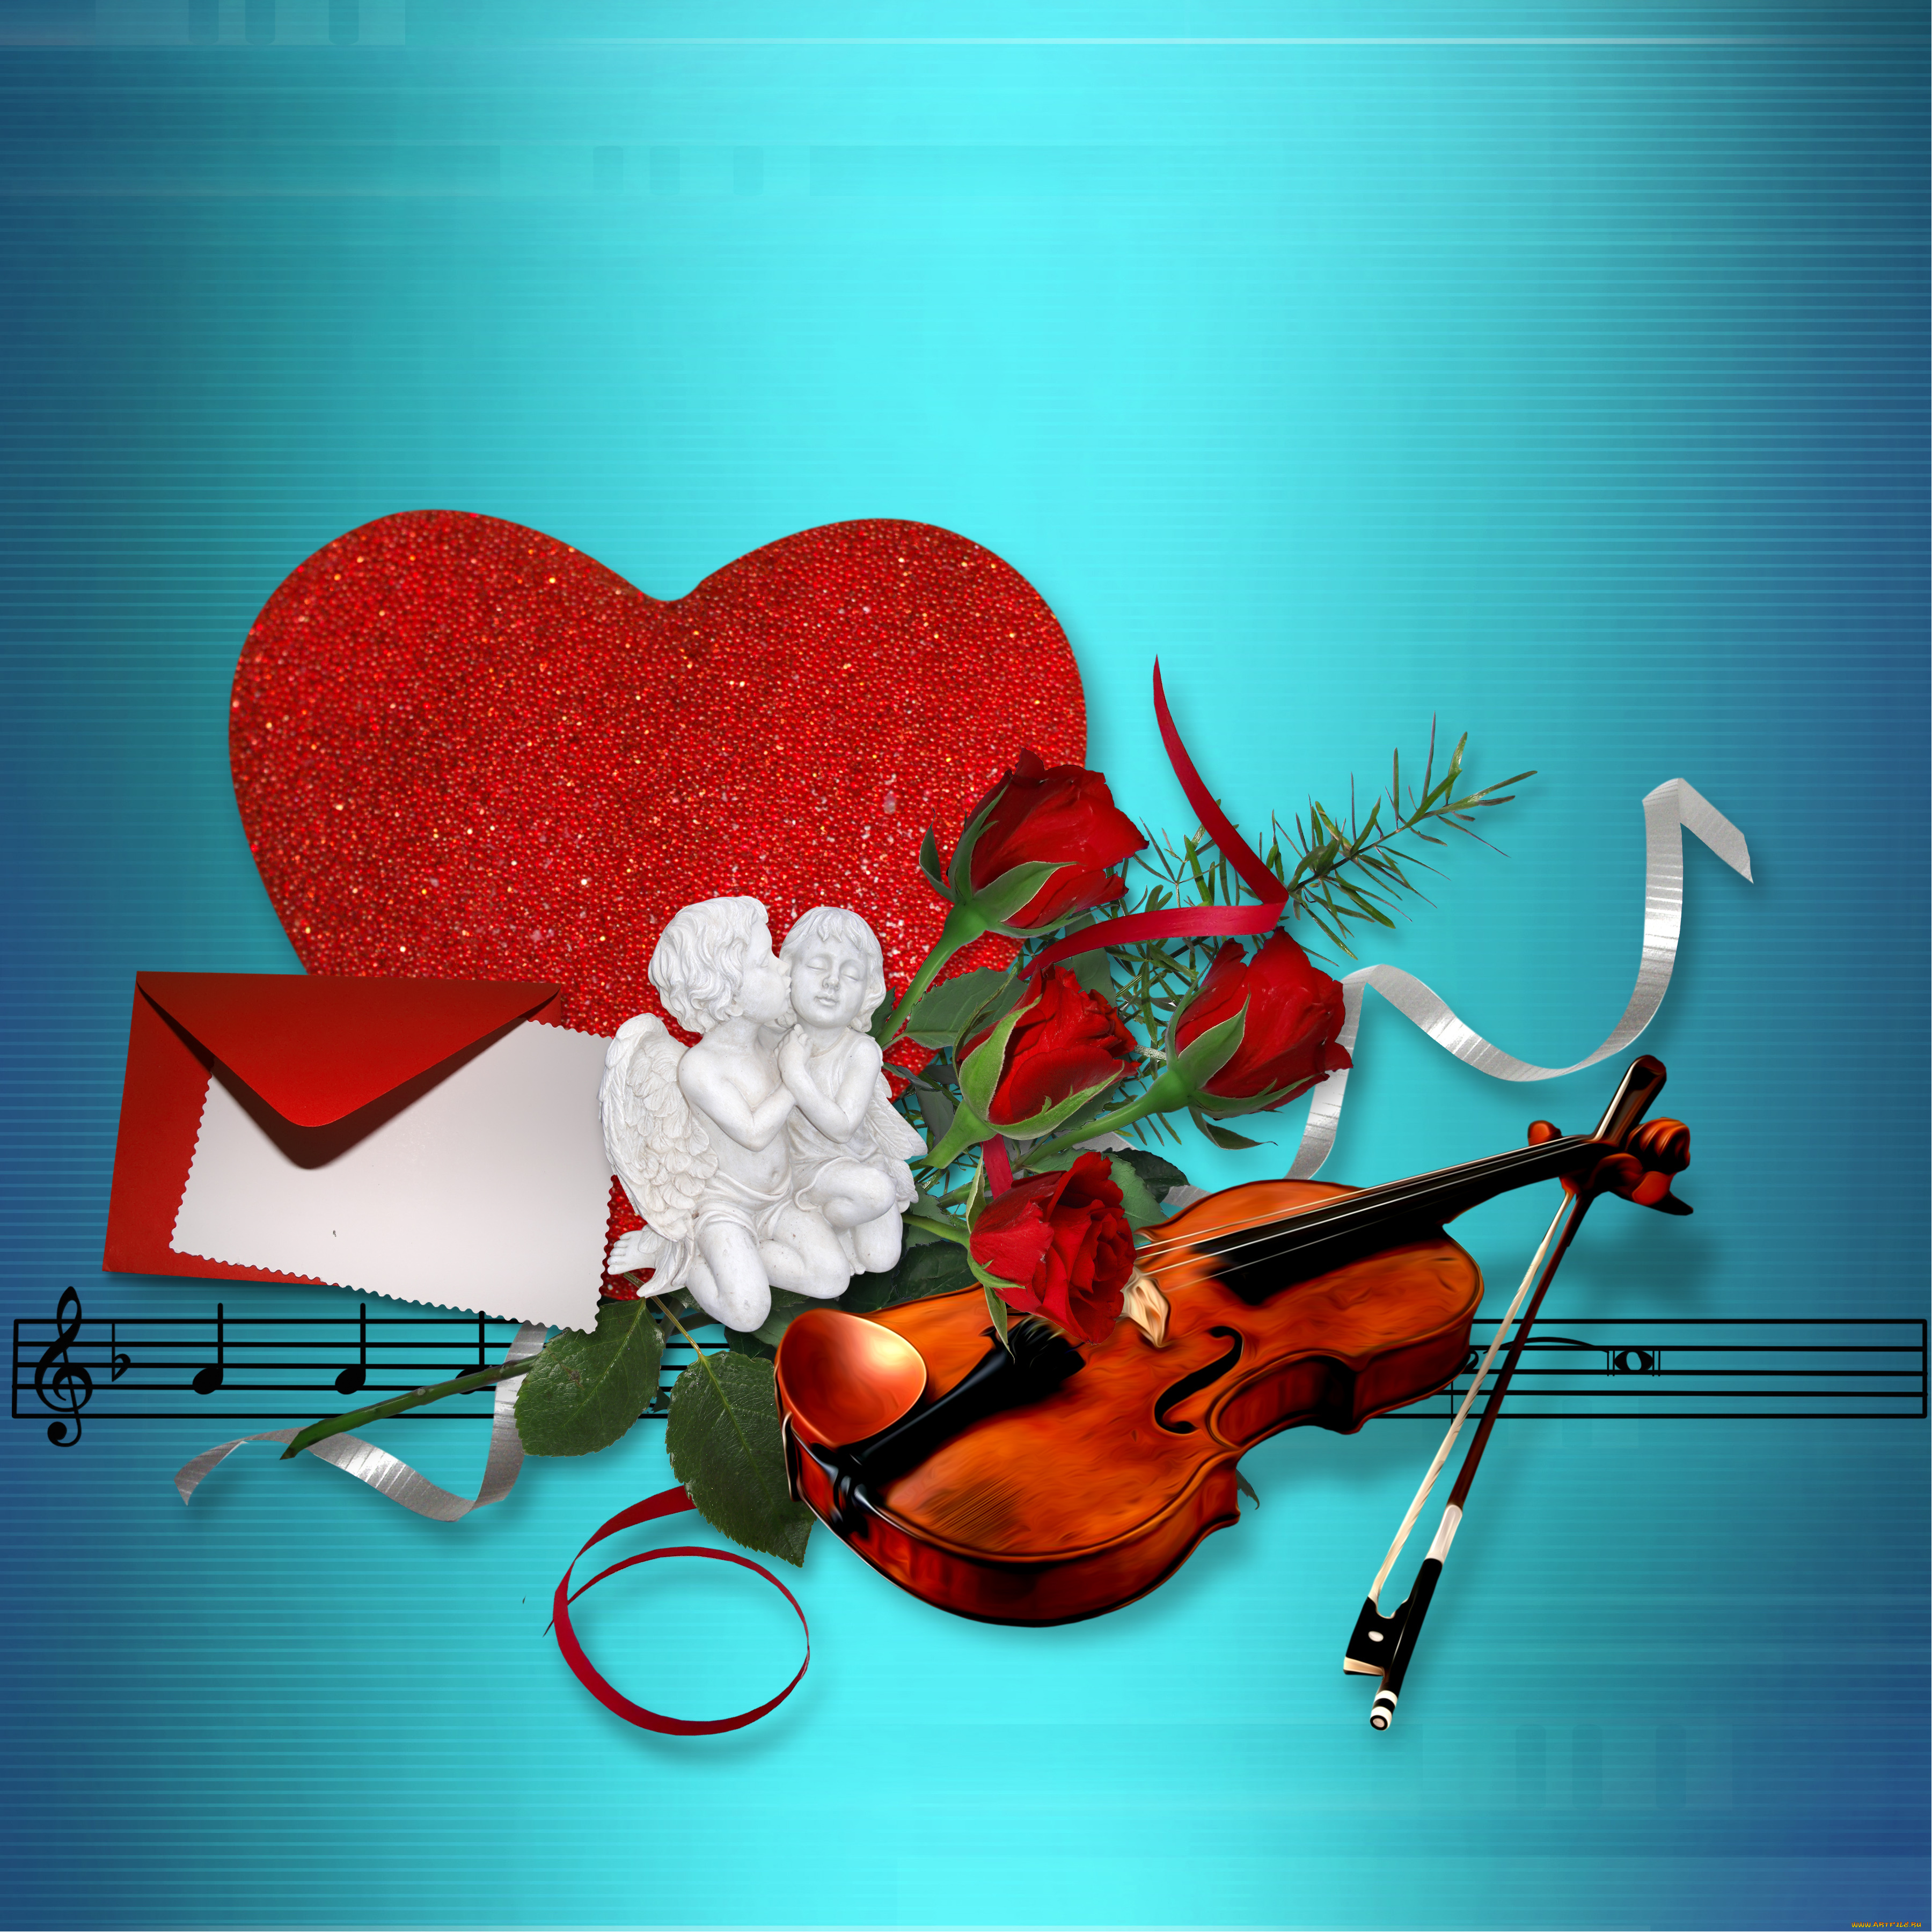 Русски песня сердце любви. Музыкальное сердце. Музыкальные картинки. Скрипка сердце. Музыкальное сердечко.